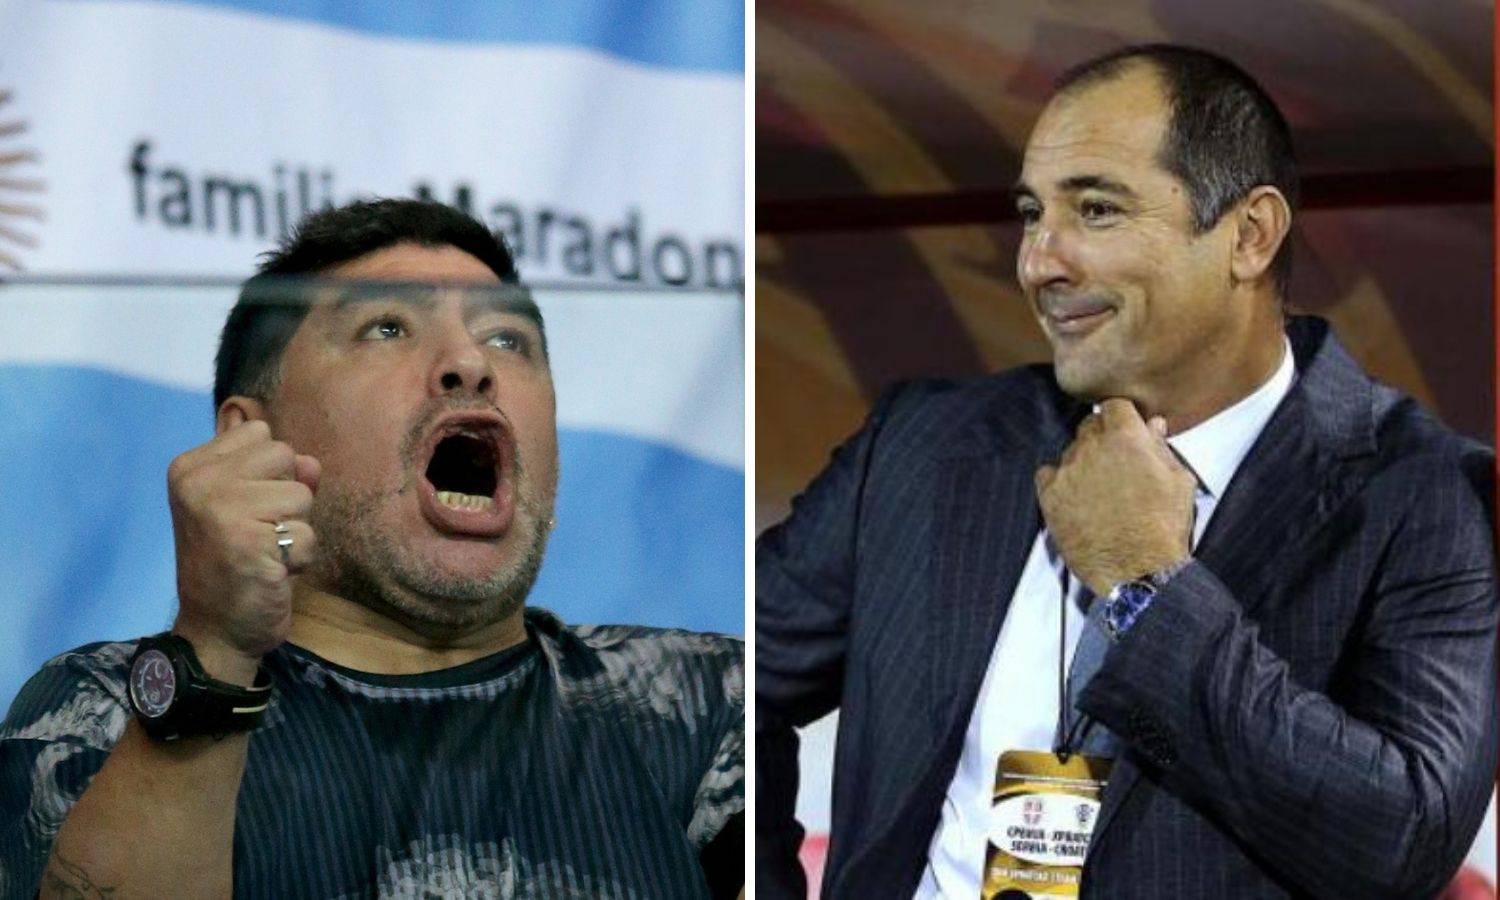 Štimac: Maradona mi nije zabio gol, a morao je van s terena kad smo se sudarili na utakmici...